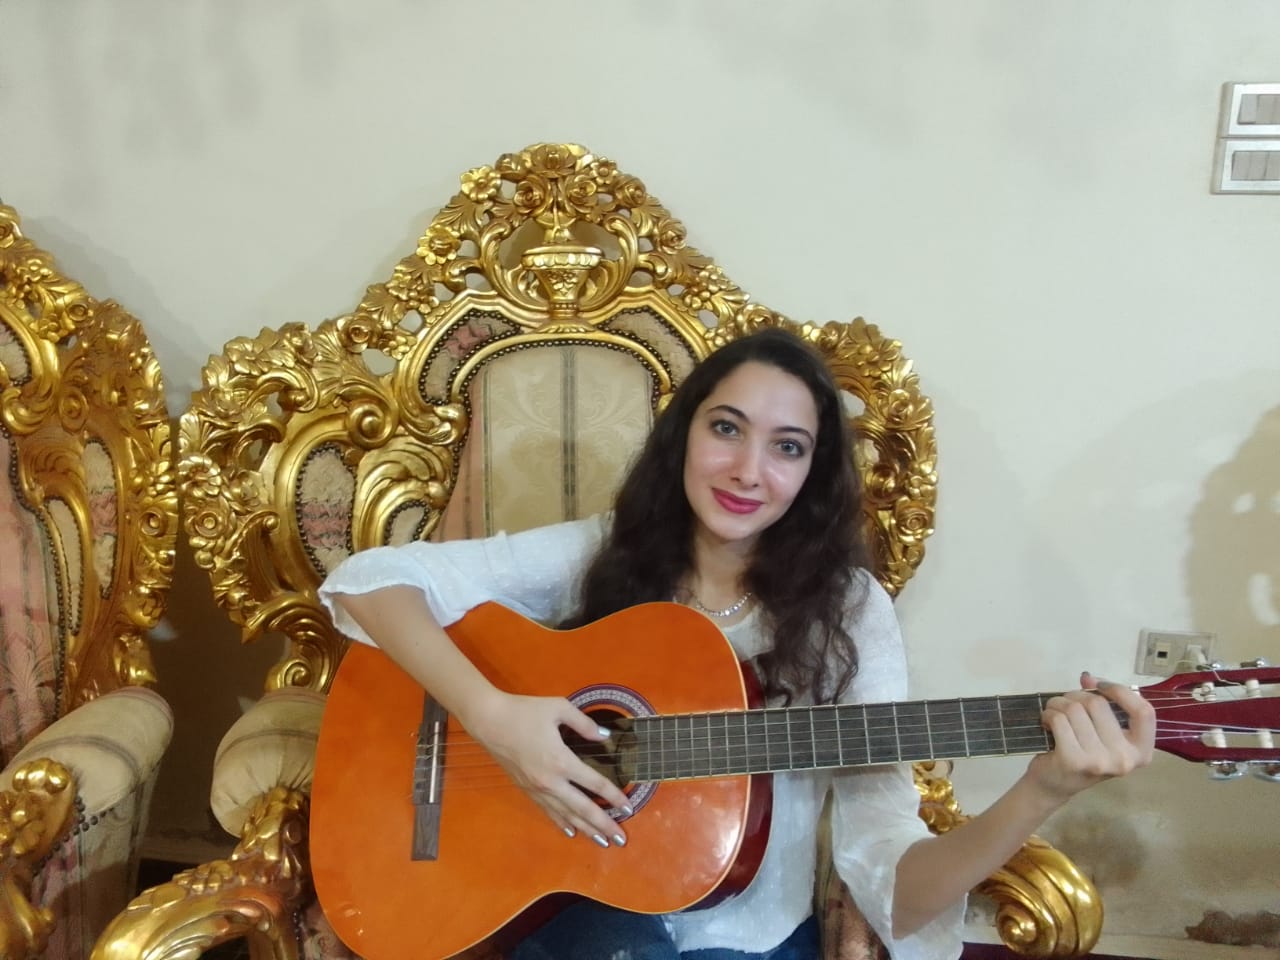 مريم موهبة الغناء الغربى في دمياط (2)